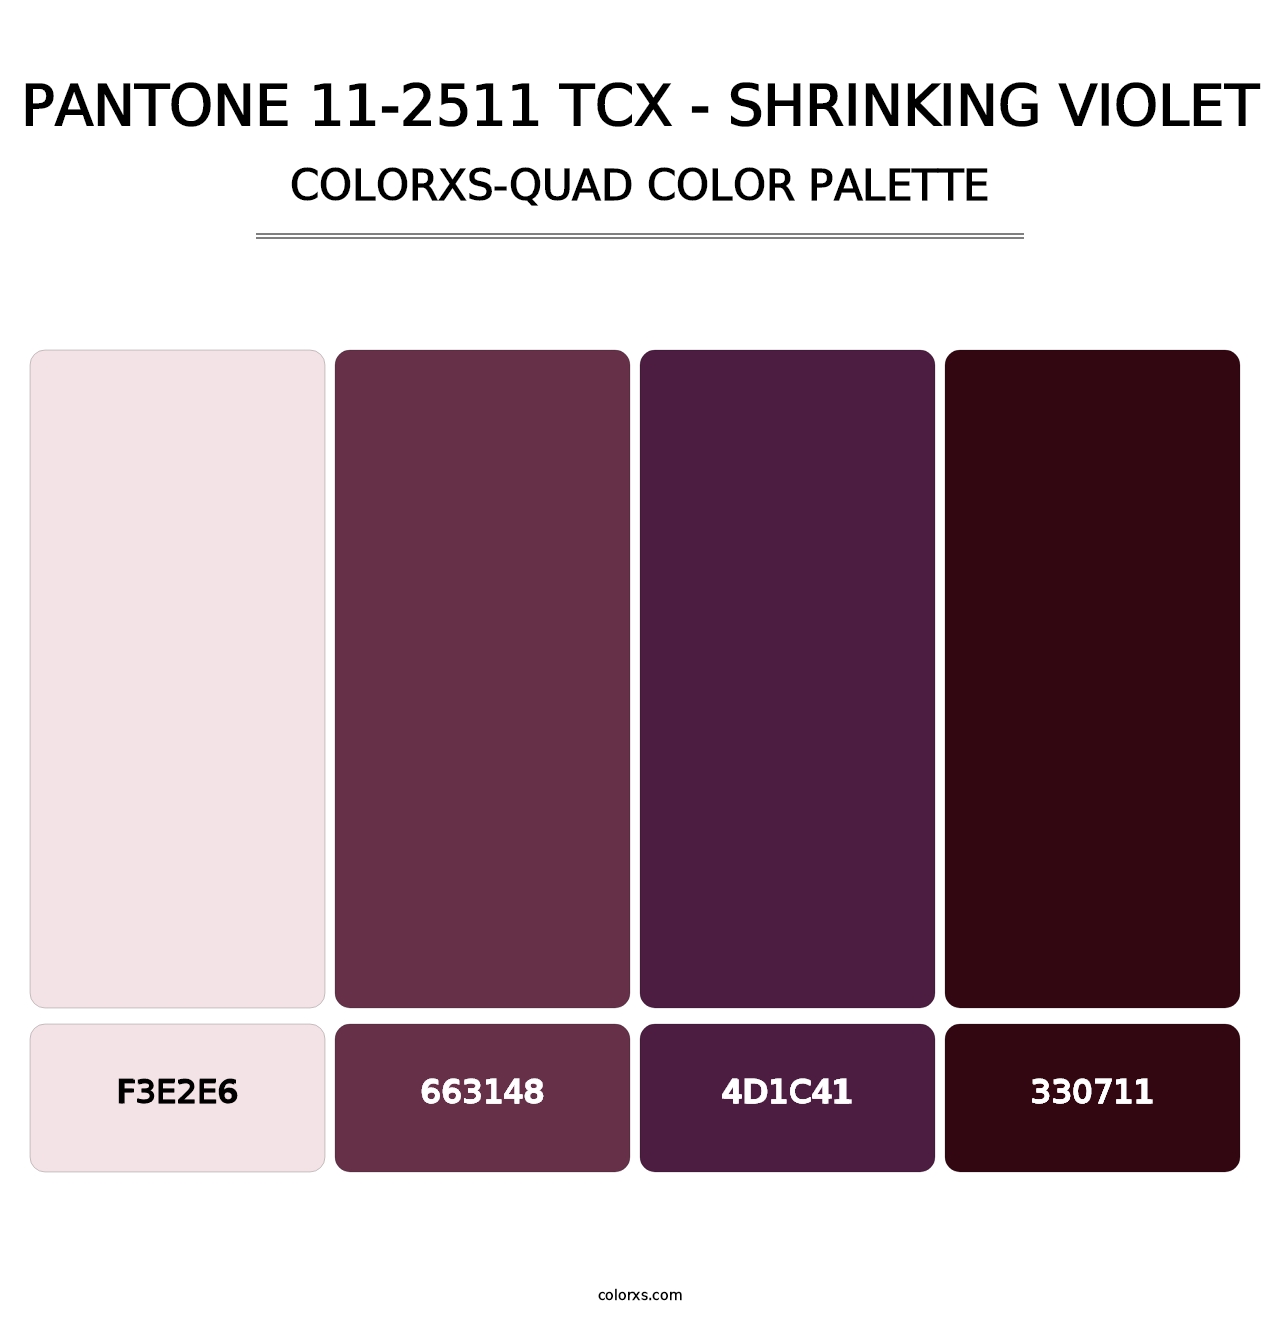 PANTONE 11-2511 TCX - Shrinking Violet - Colorxs Quad Palette